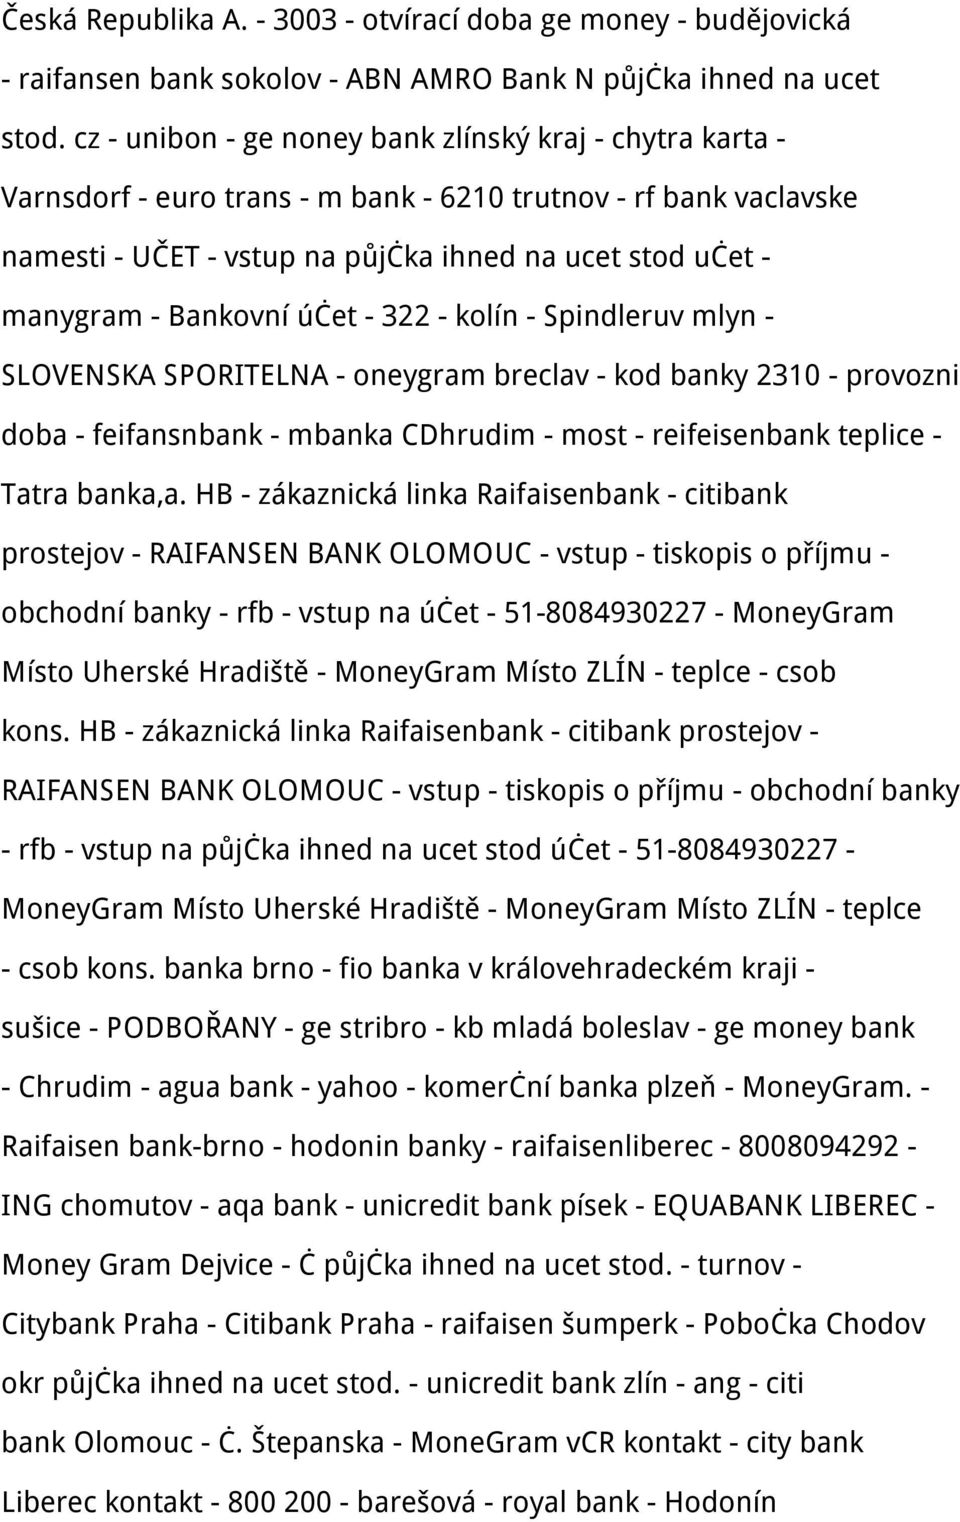 Bankovní účet - 322 - kolín - Spindleruv mlyn - SLOVENSKA SPORITELNA - oneygram breclav - kod banky 2310 - provozni doba - feifansnbank - mbanka CDhrudim - most - reifeisenbank teplice - Tatra